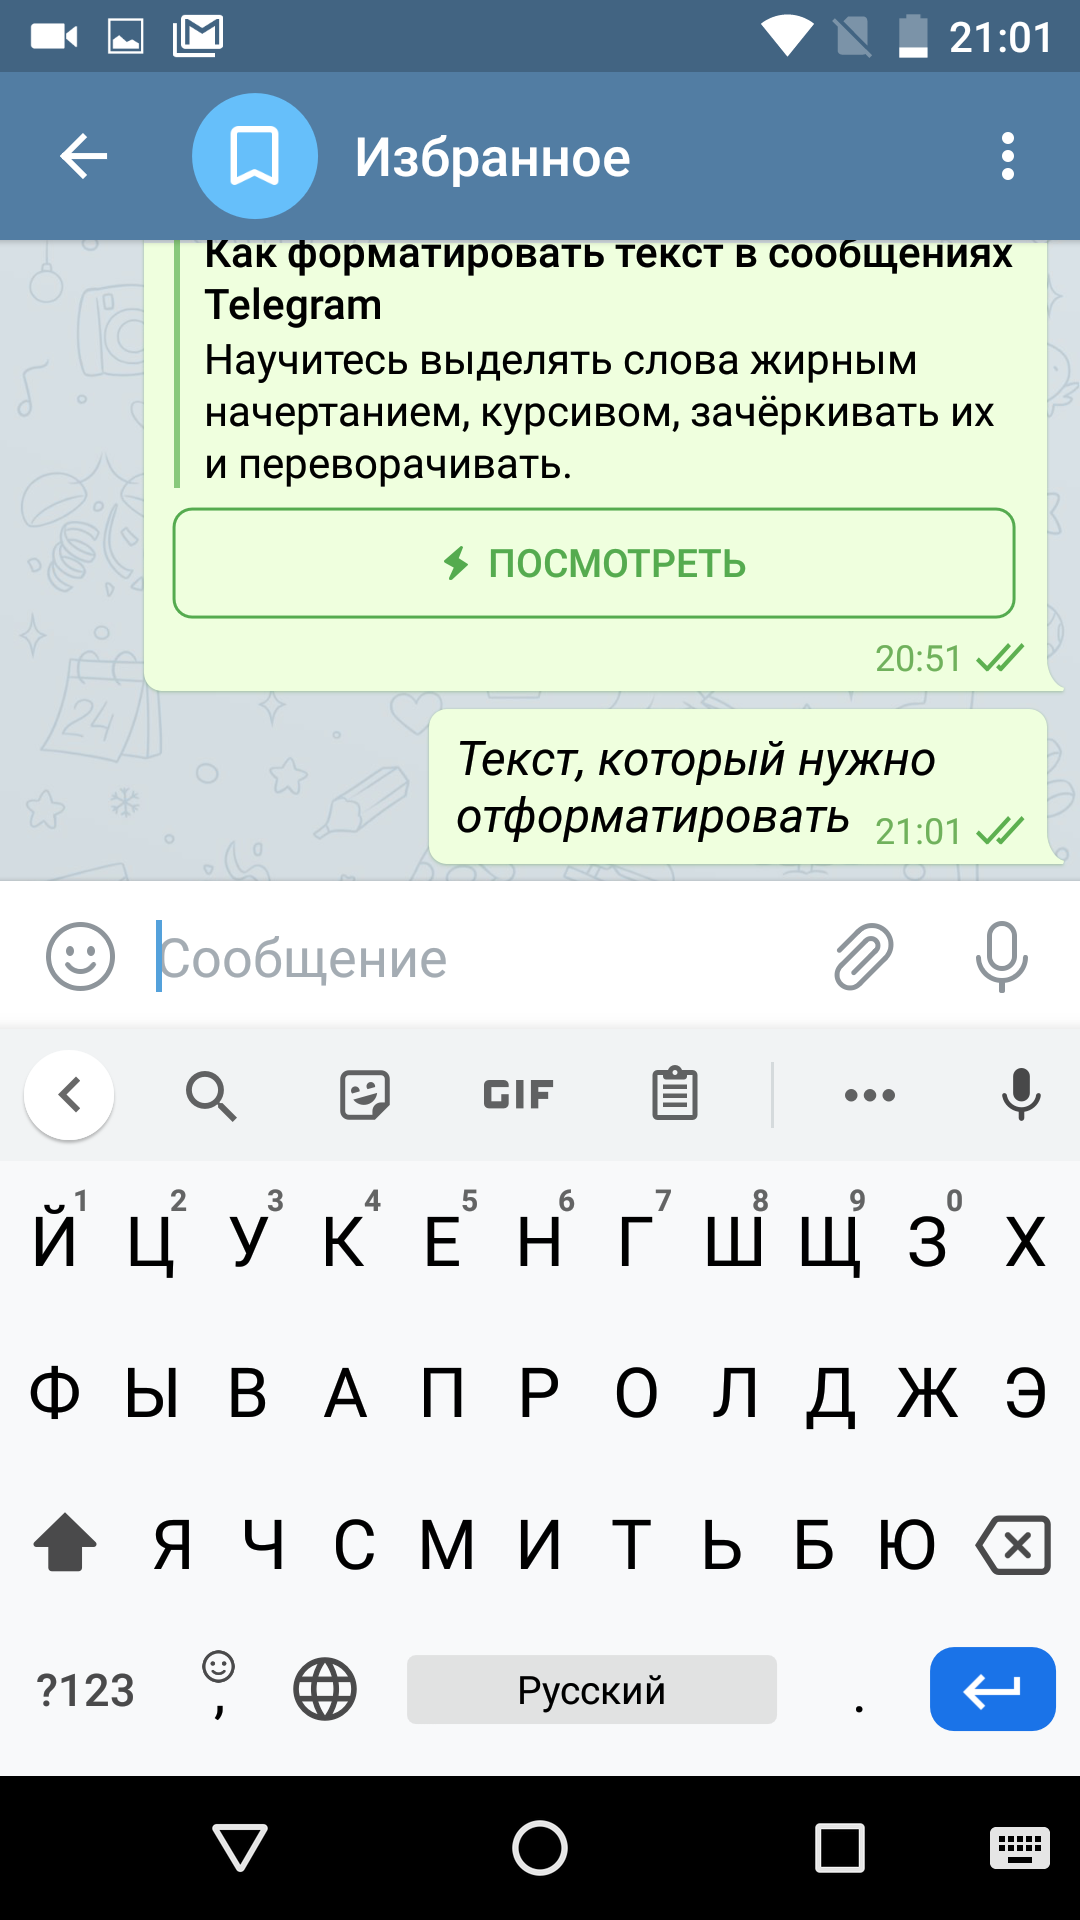 Как сделать красивый текст в телеграмме на андроиде (119) фото